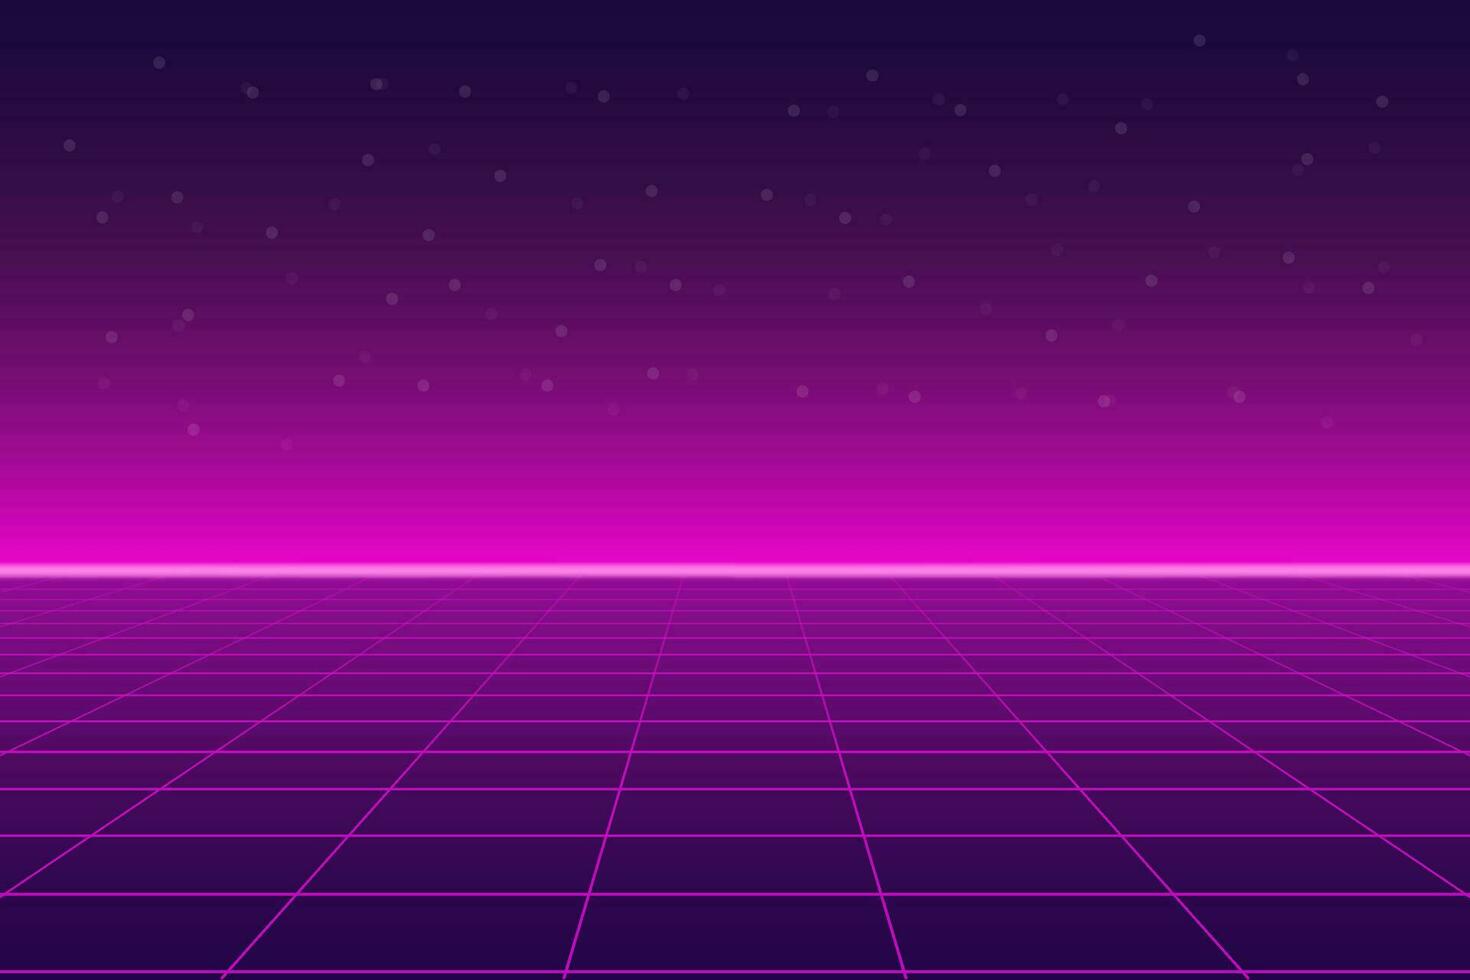 Bright retro pink purple background futuristic landscape 1980s style vector